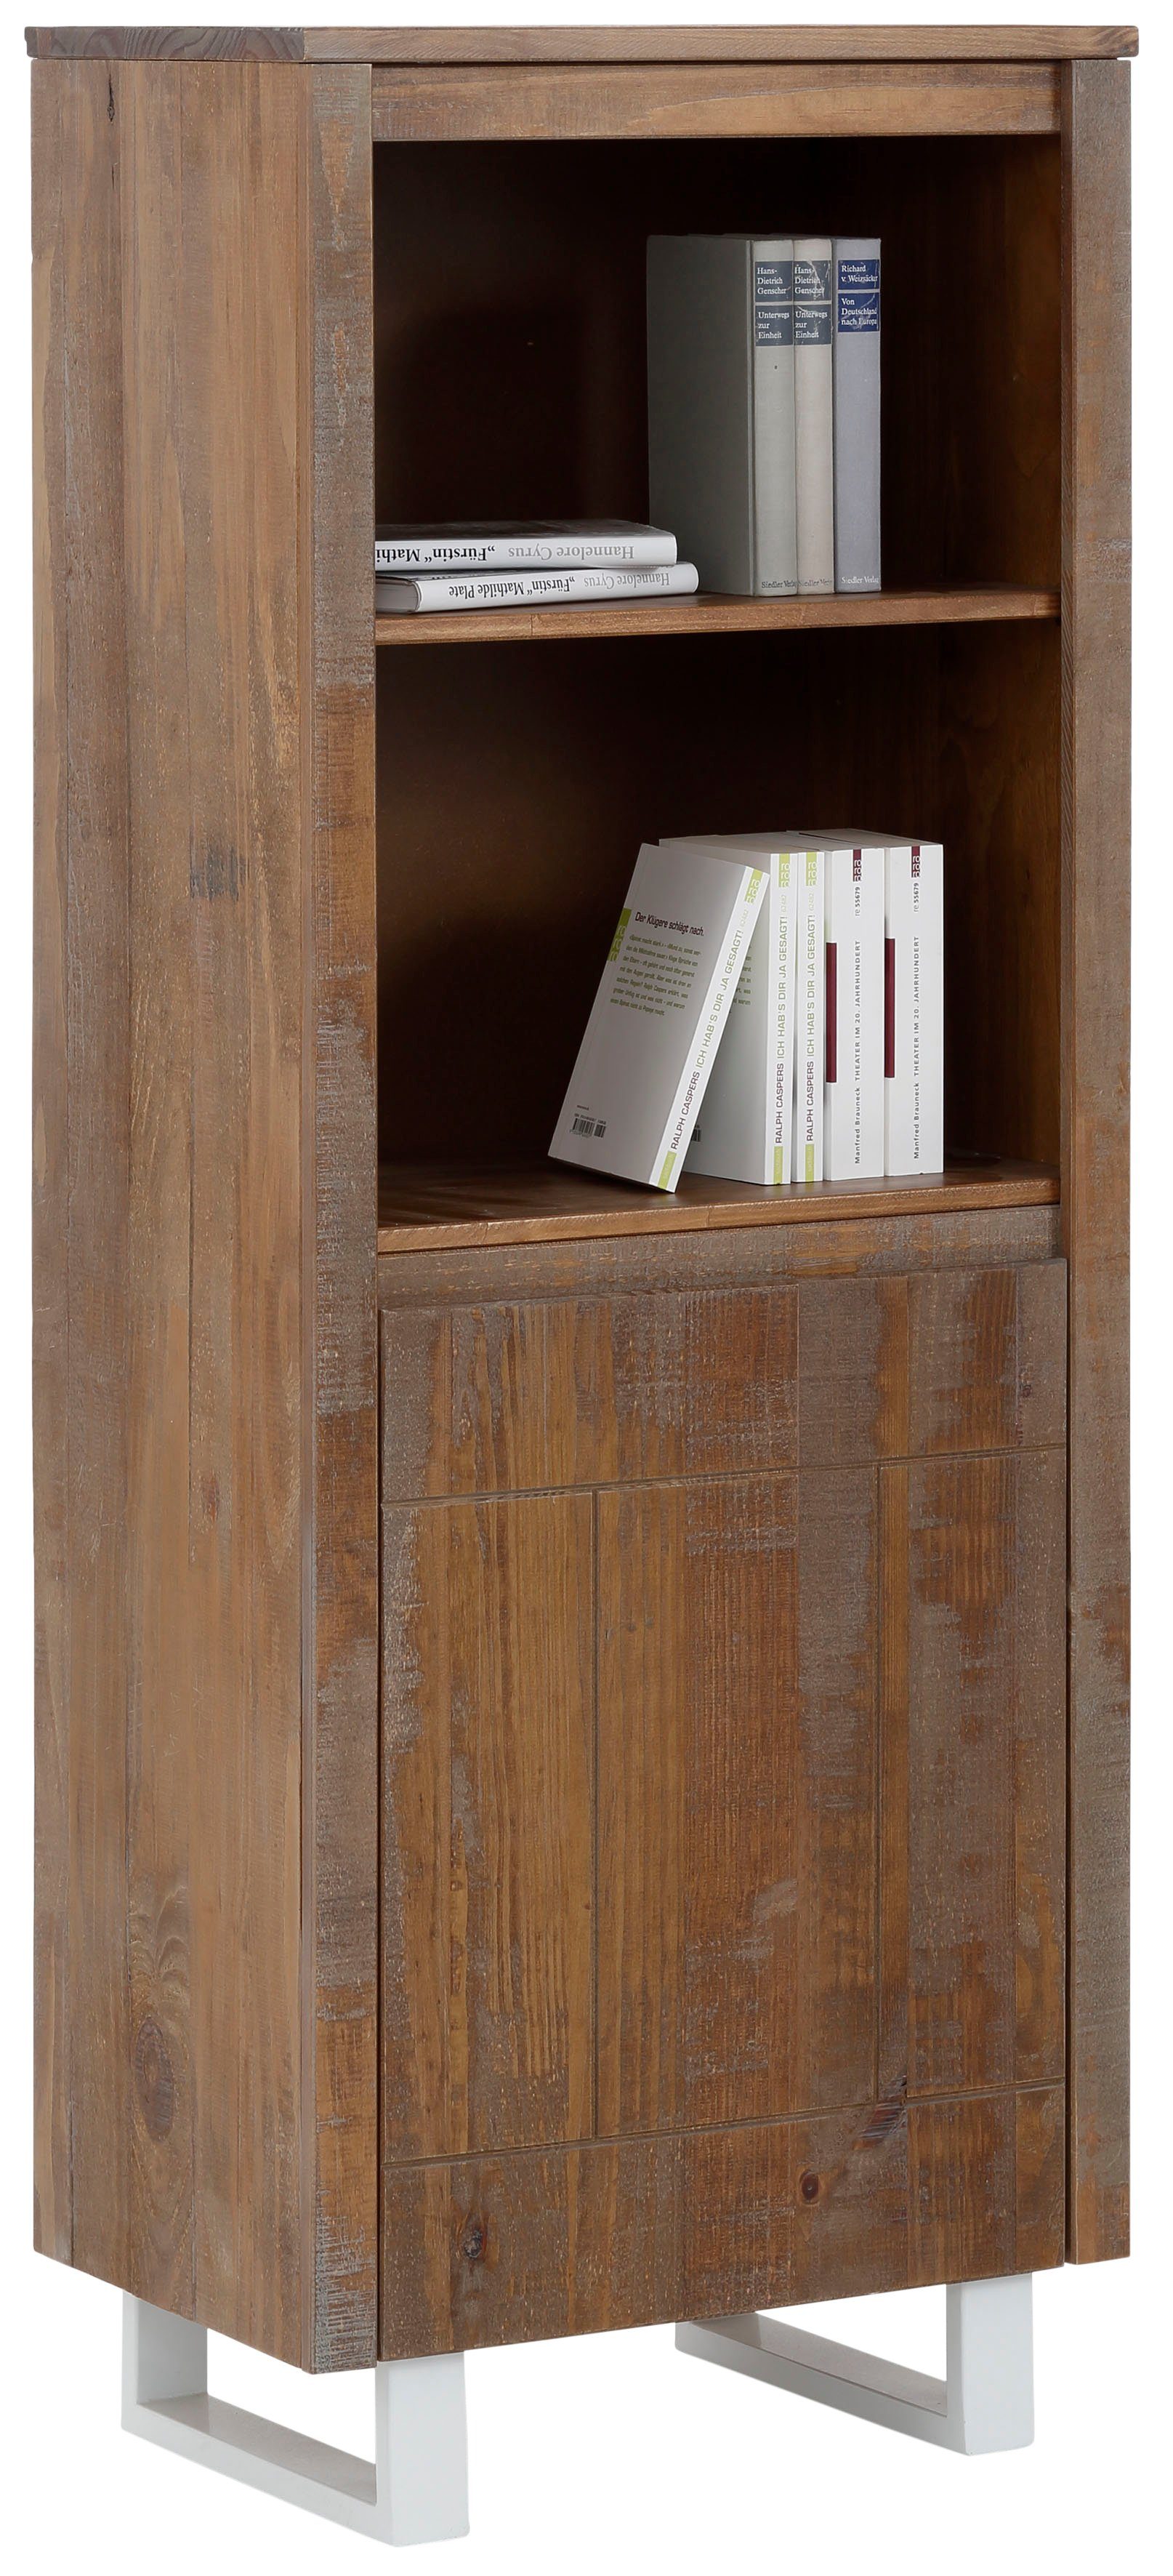 Home affaire Bücherregal Lagos, aus schönem massivem Kiefernholz, grifflos, Breite 55 cm | Bücherschränke